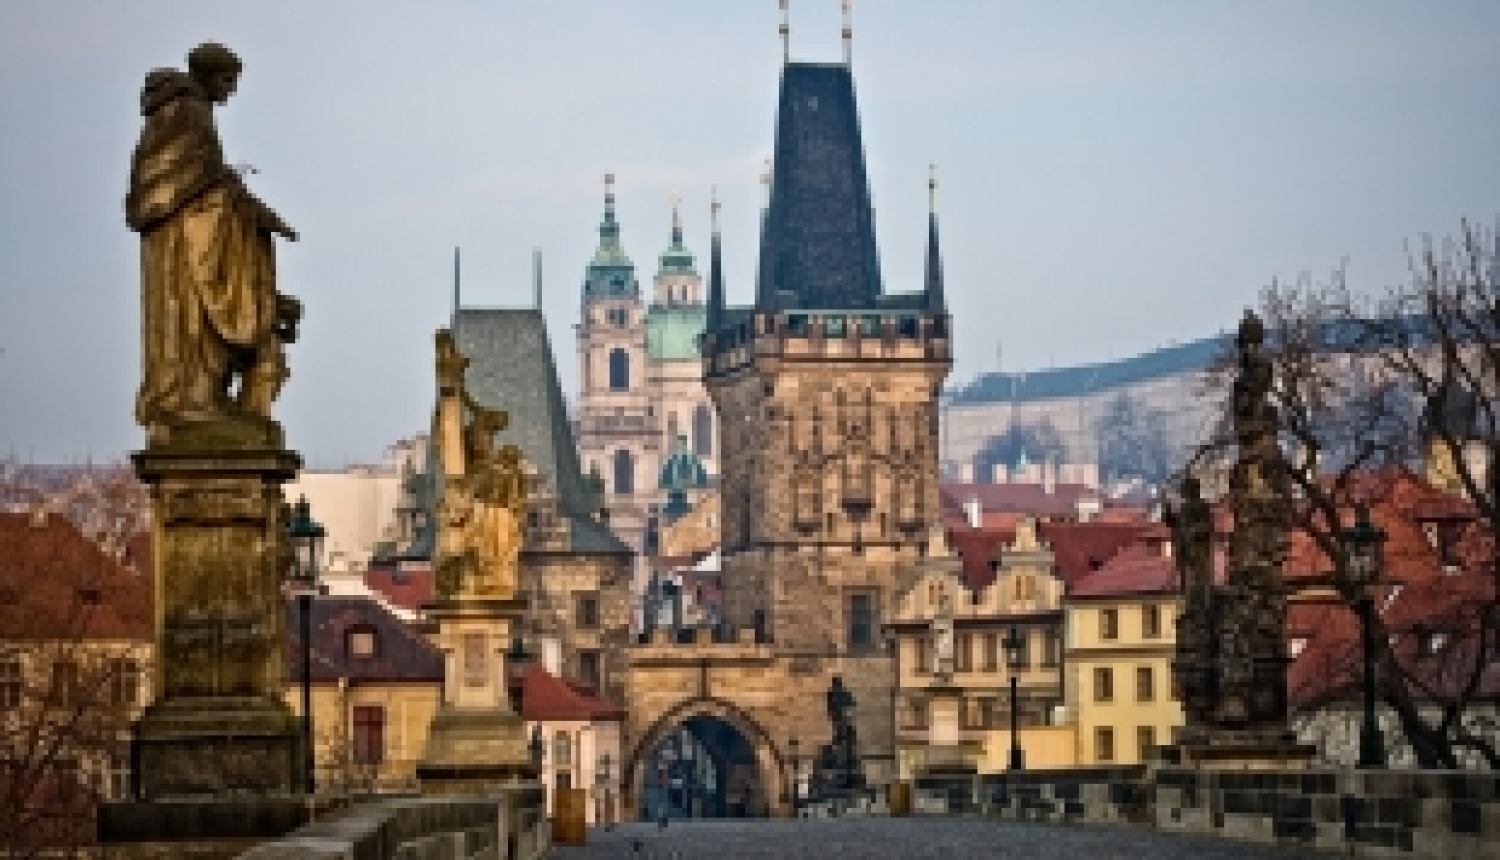 Iespēja pieteikties Čehijas valdības stipendijām čehu valodas vasaras kursiem